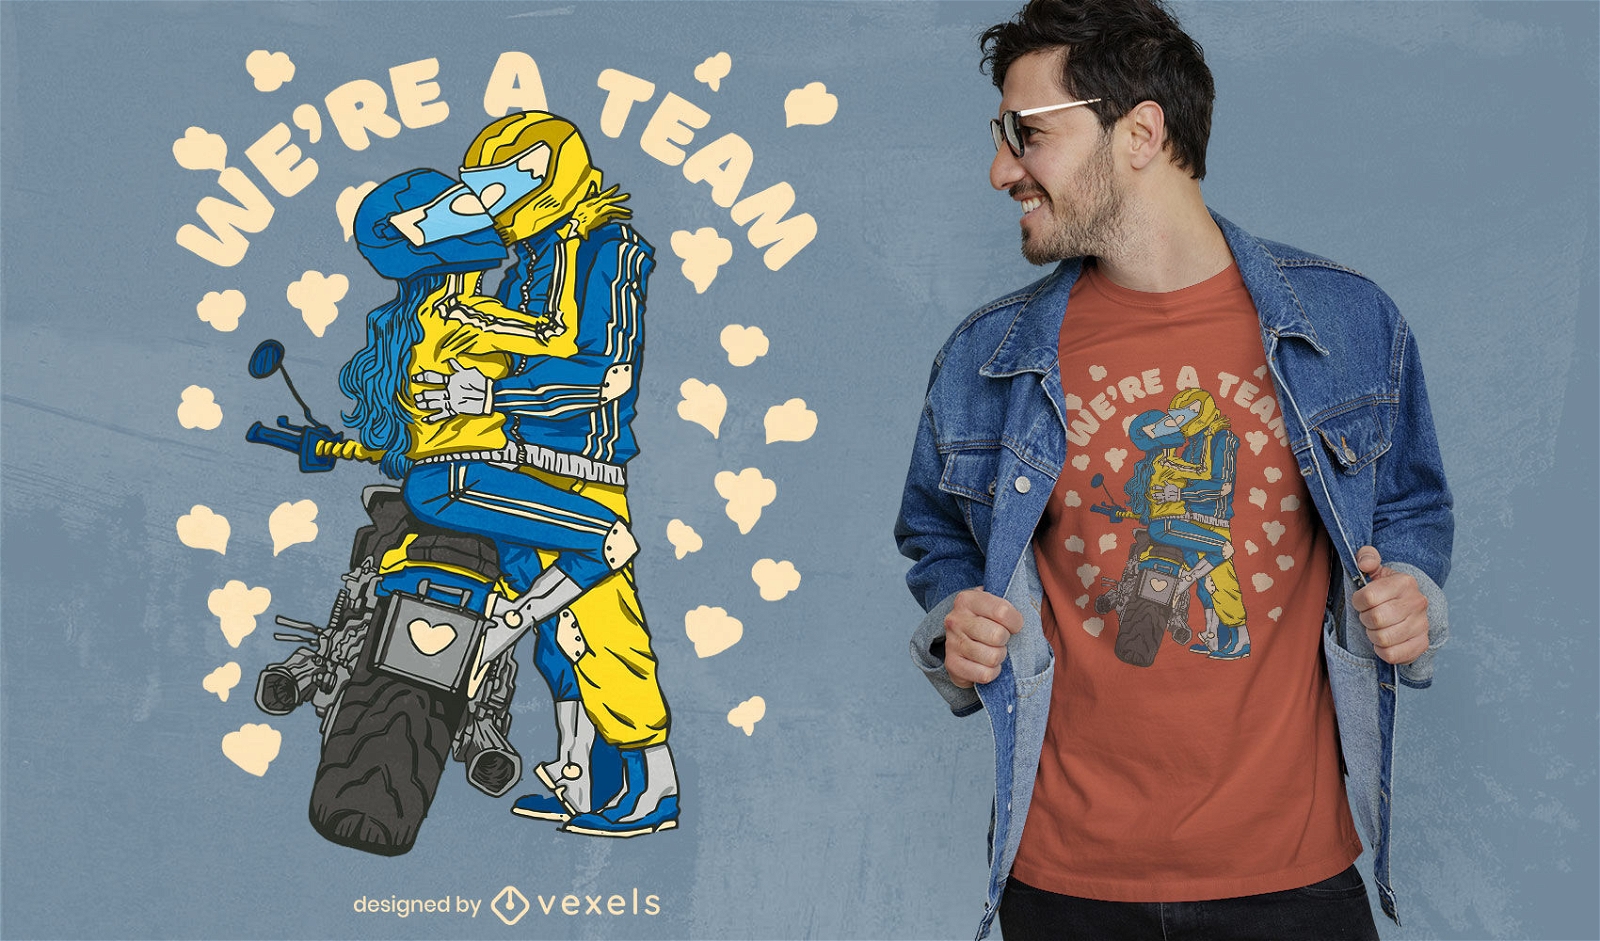 Dise?o de camiseta de pareja de motociclistas enamorados.